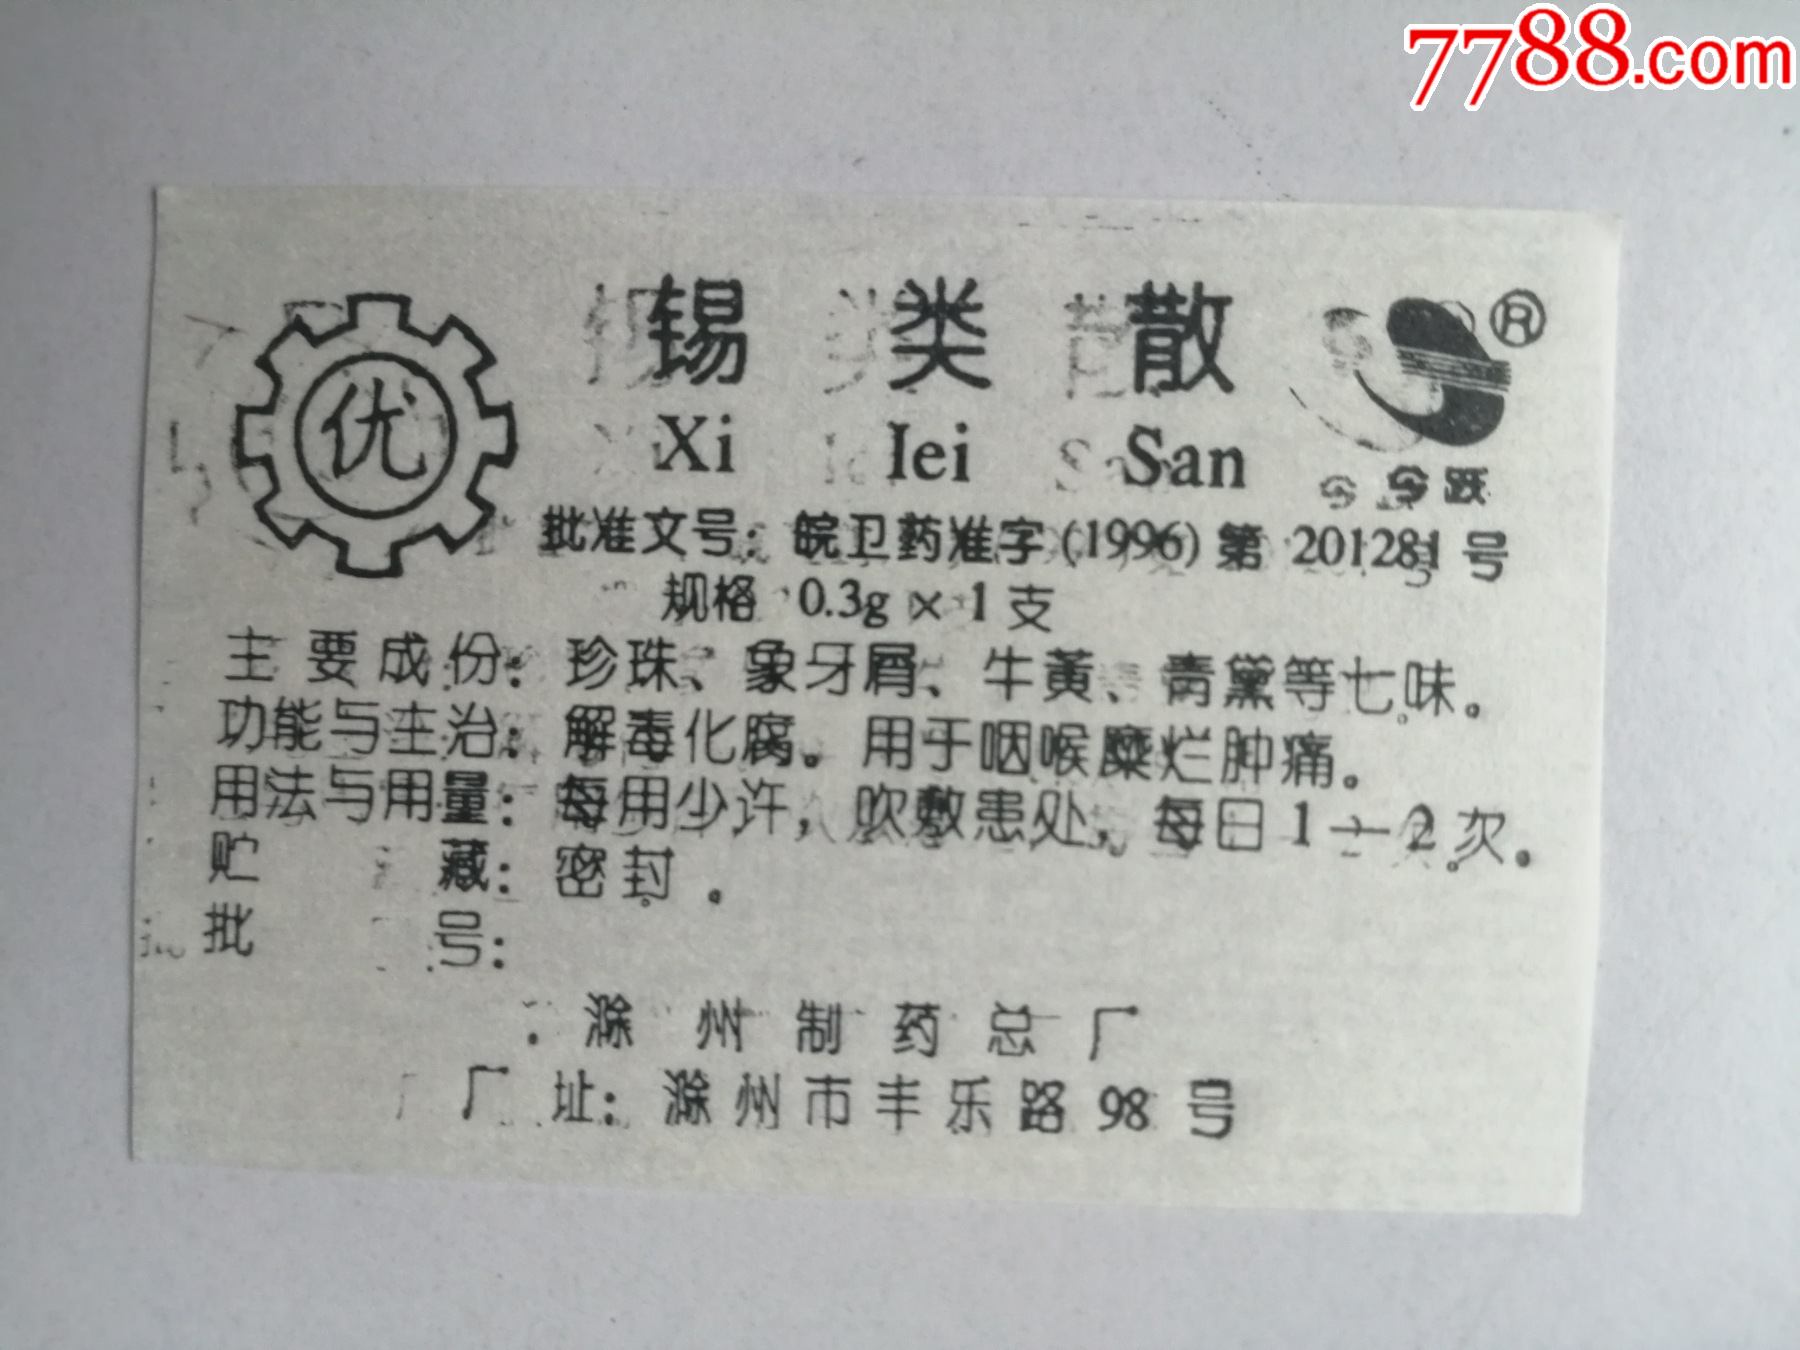 1996皖卫药准字201281号批准锡类散滁州制药总厂